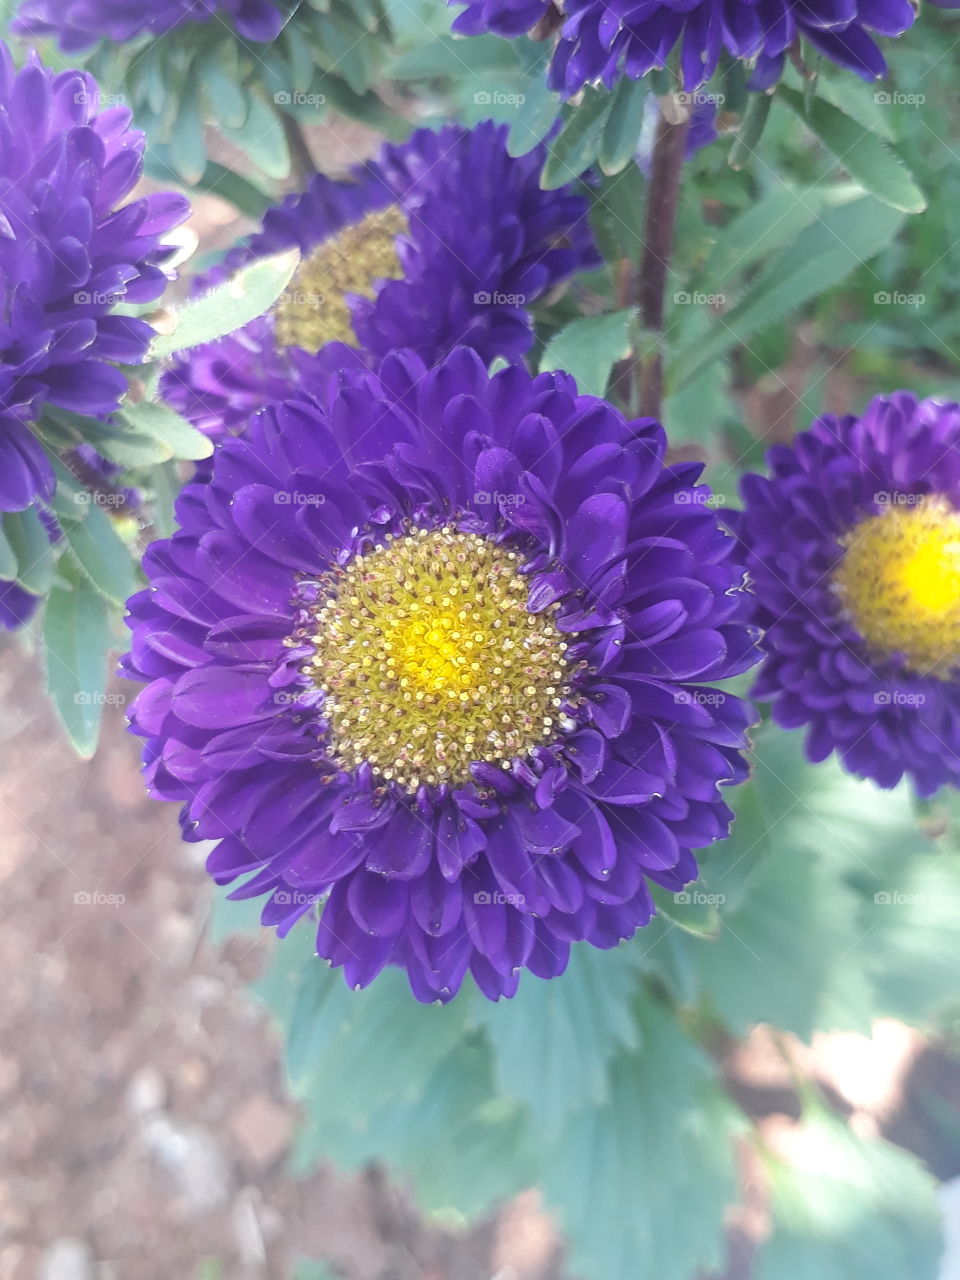 The dark purplish flowers.